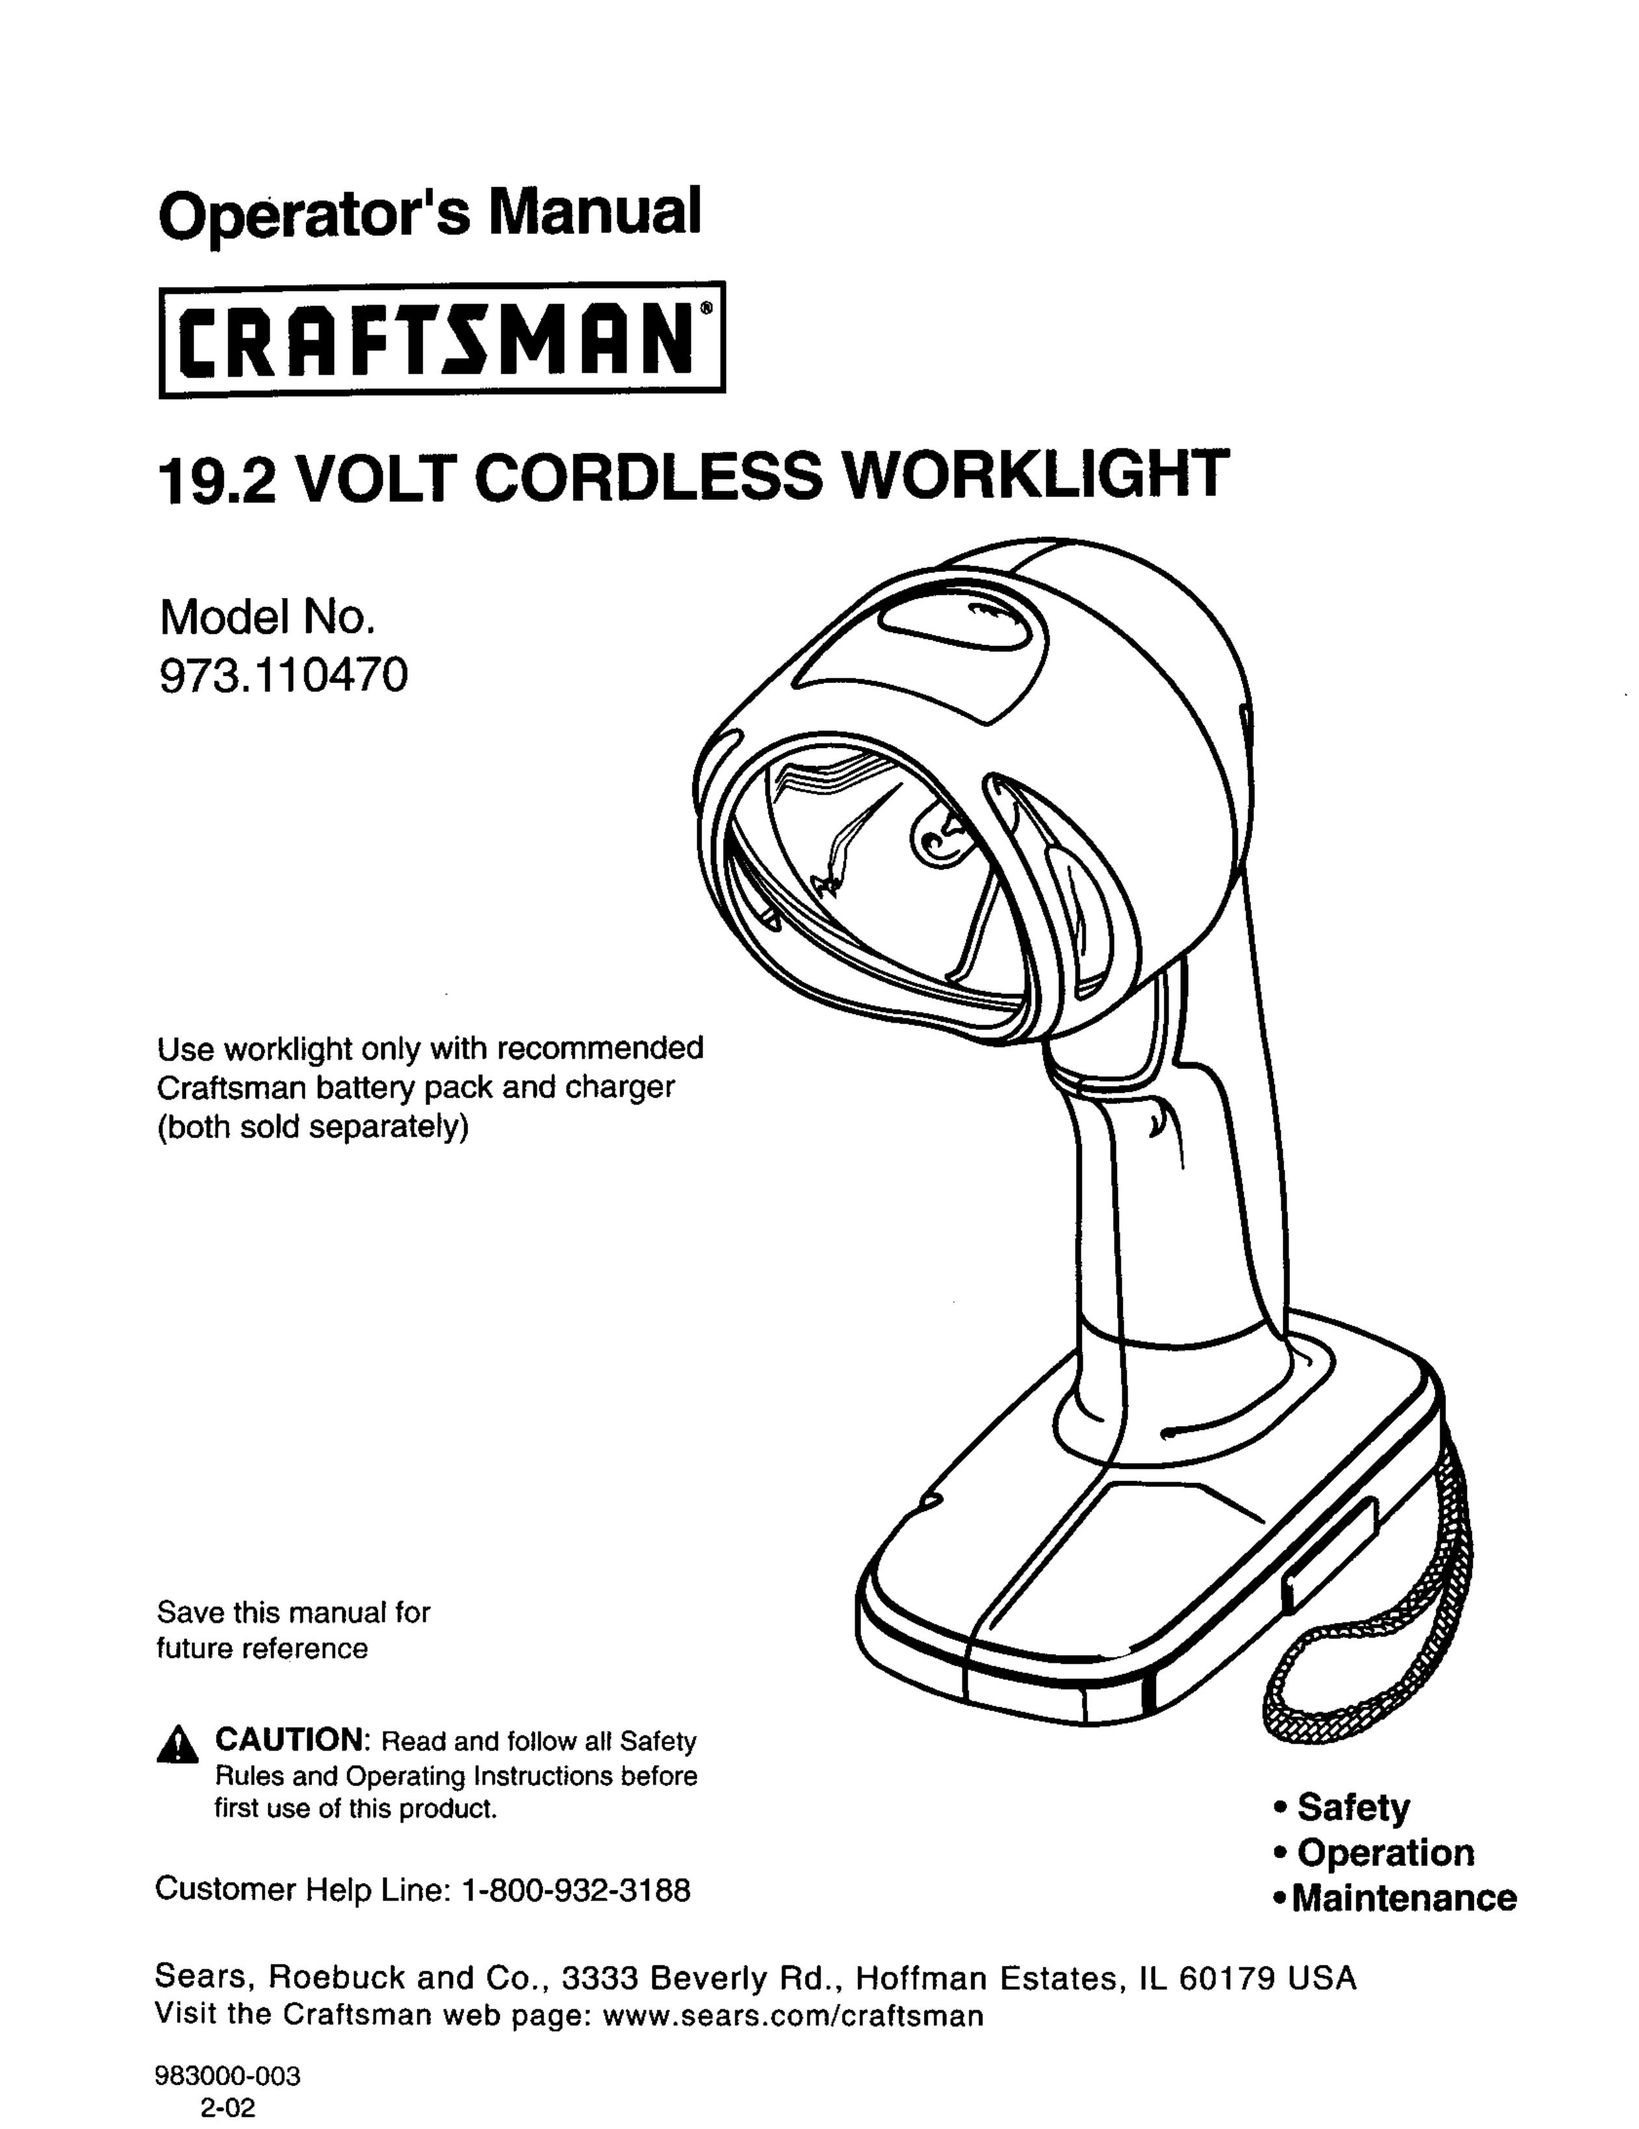 Craftsman 973.110470 Work Light User Manual